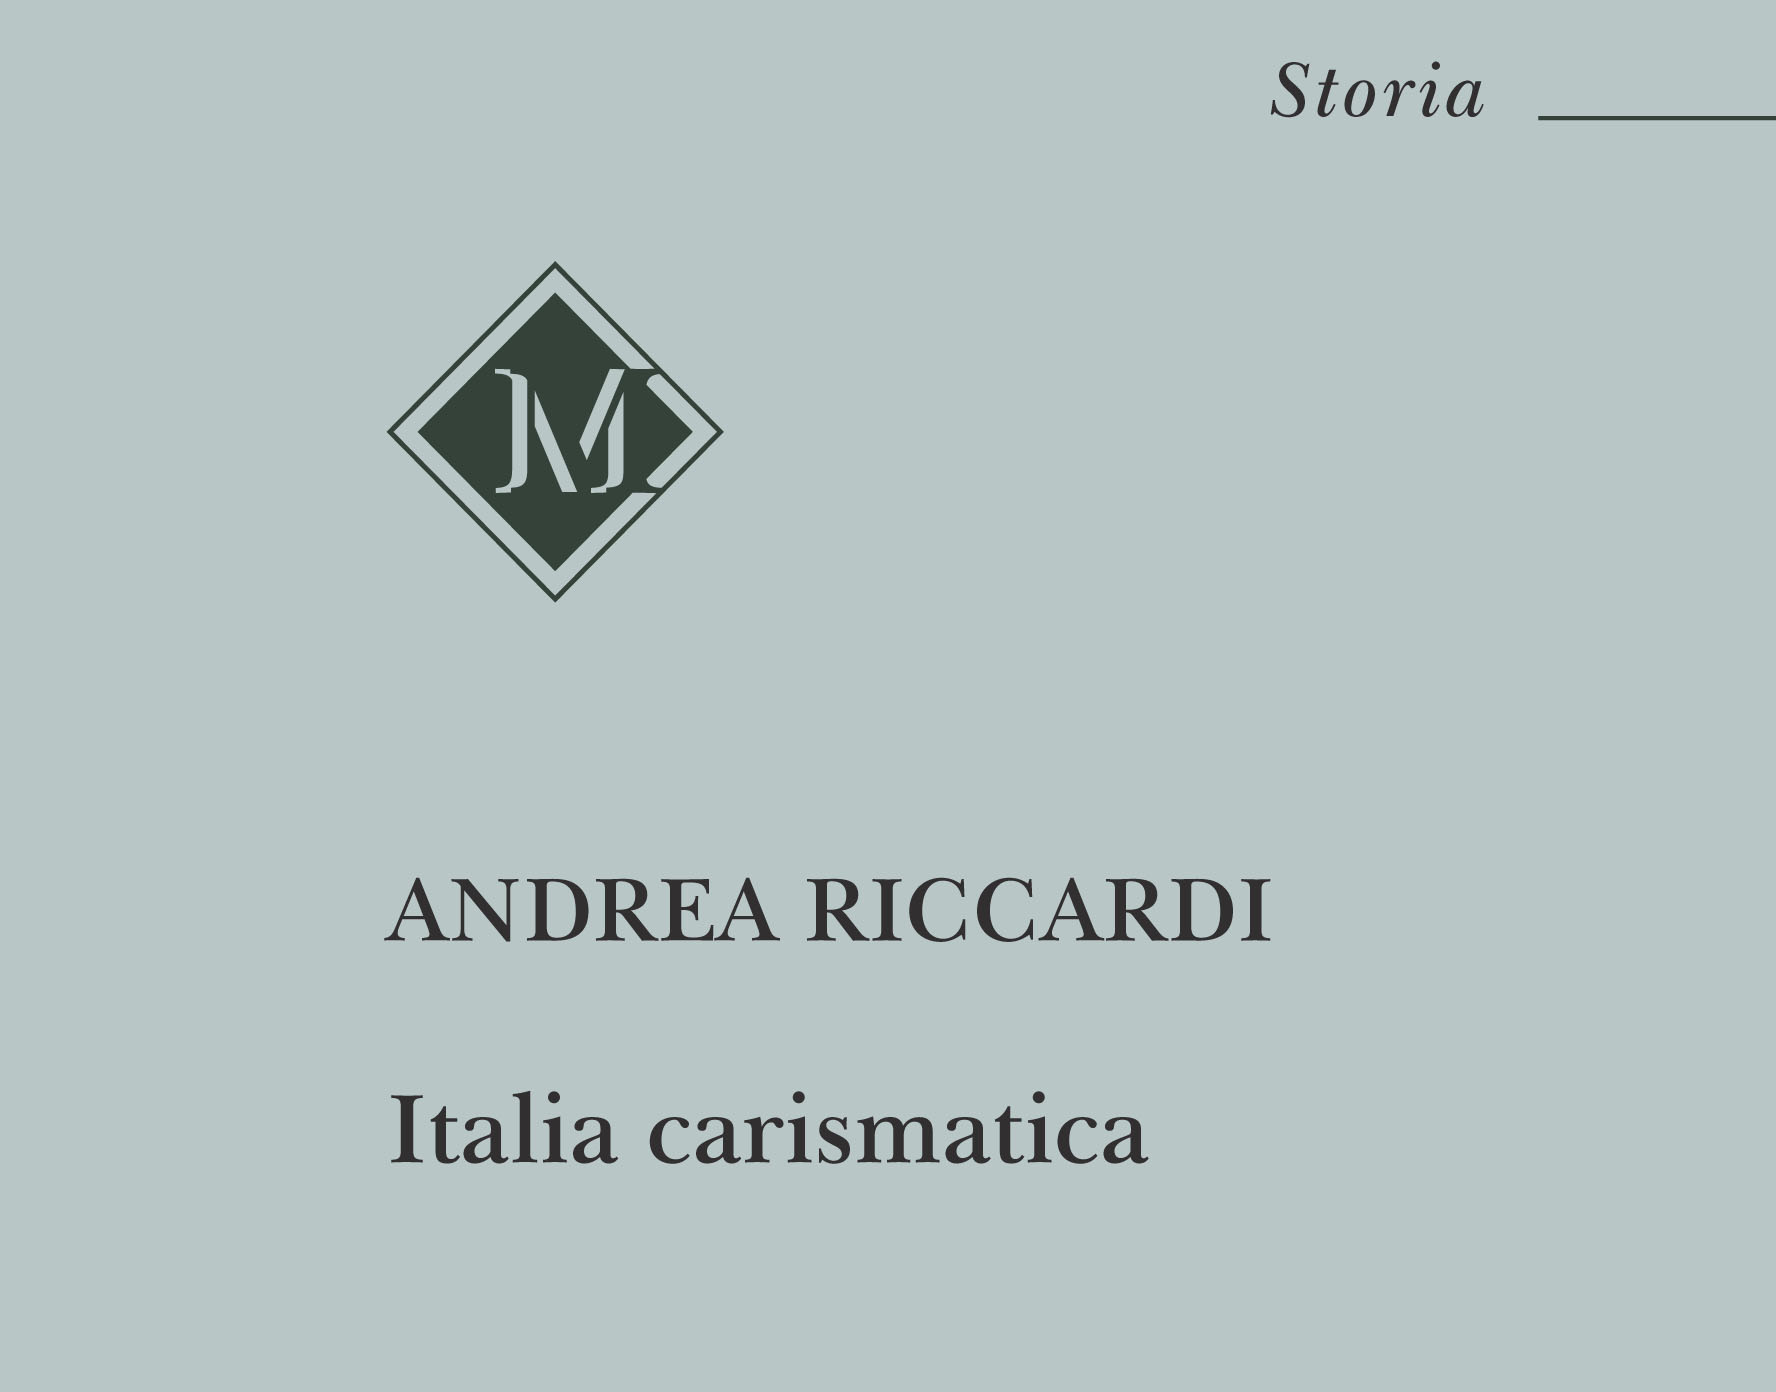 La sfida carismatica nell'Italia cattolica in un libro di Andrea Riccardi